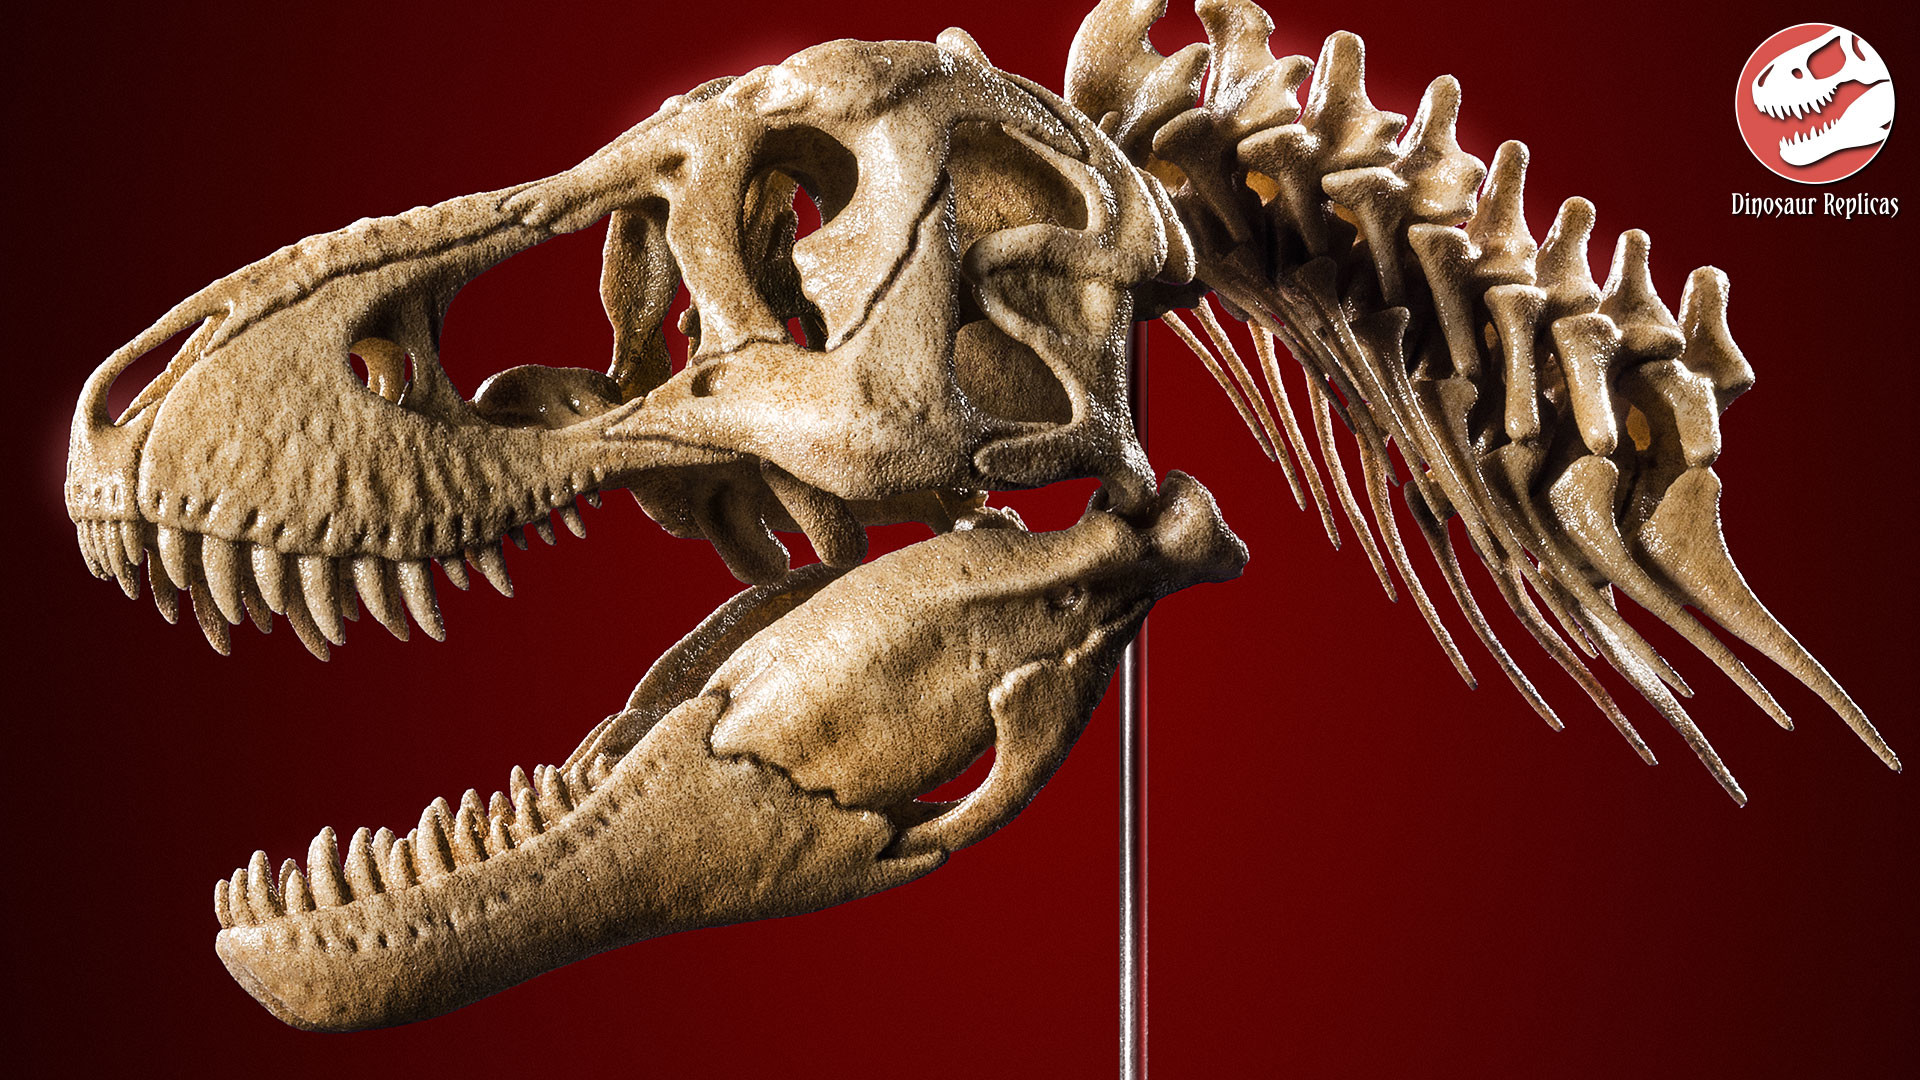 dinosaur-replicas-neckskull-rex-artstati